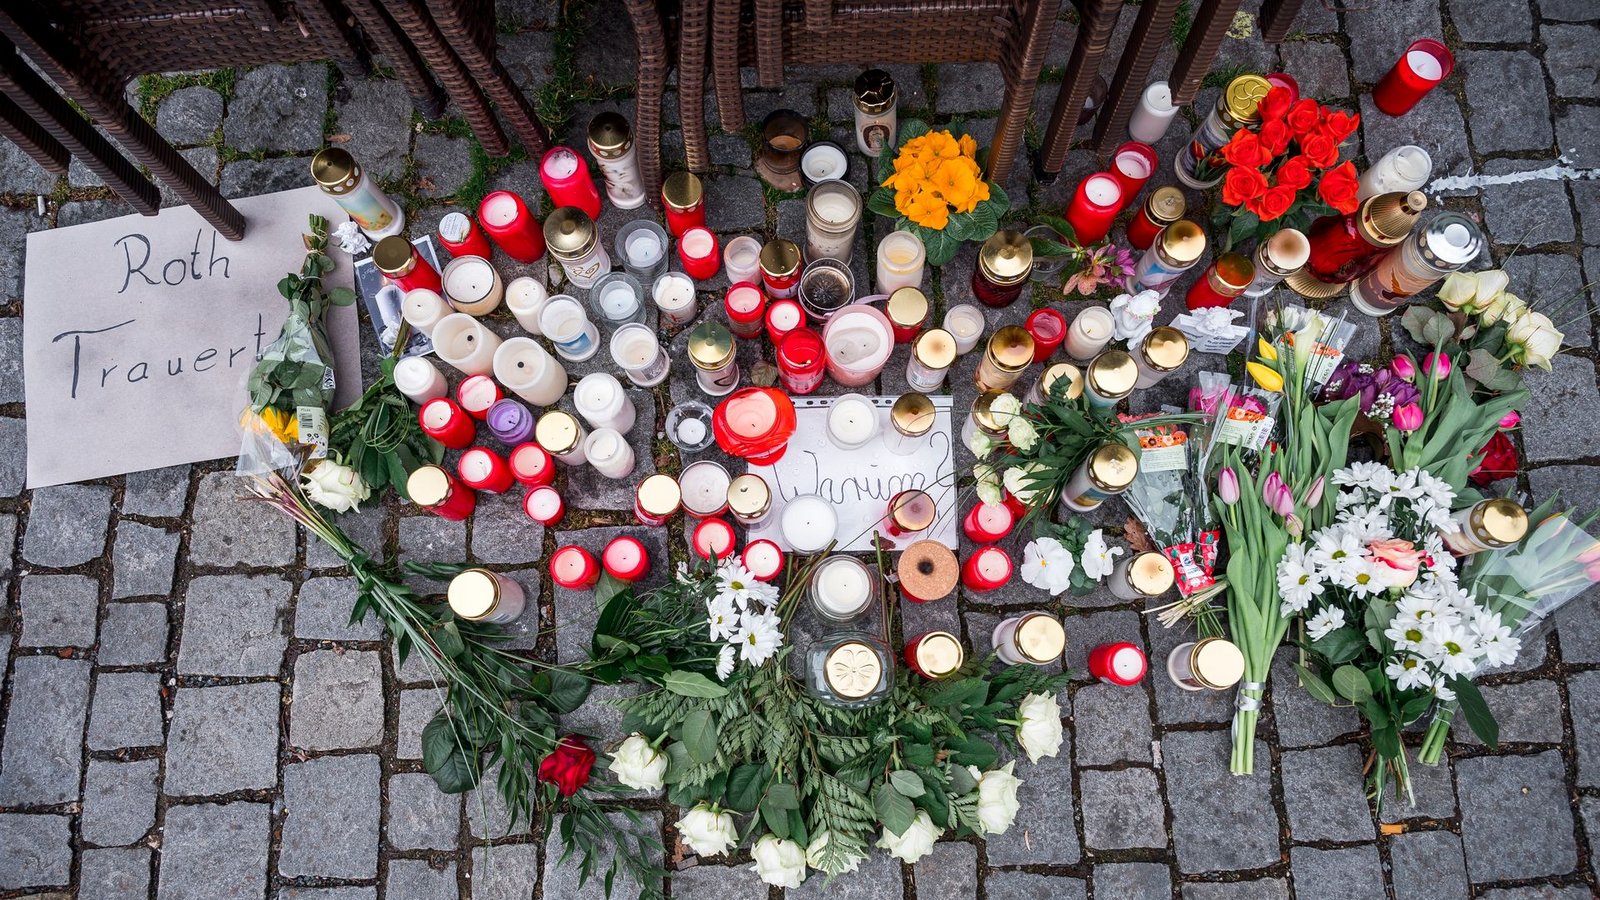 Auf dem Platz vor dem Blumengeschäft sind Blumen und Kerzen als Zeichen der Trauer niedergelegt.Foto: Daniel Vogl/dpa